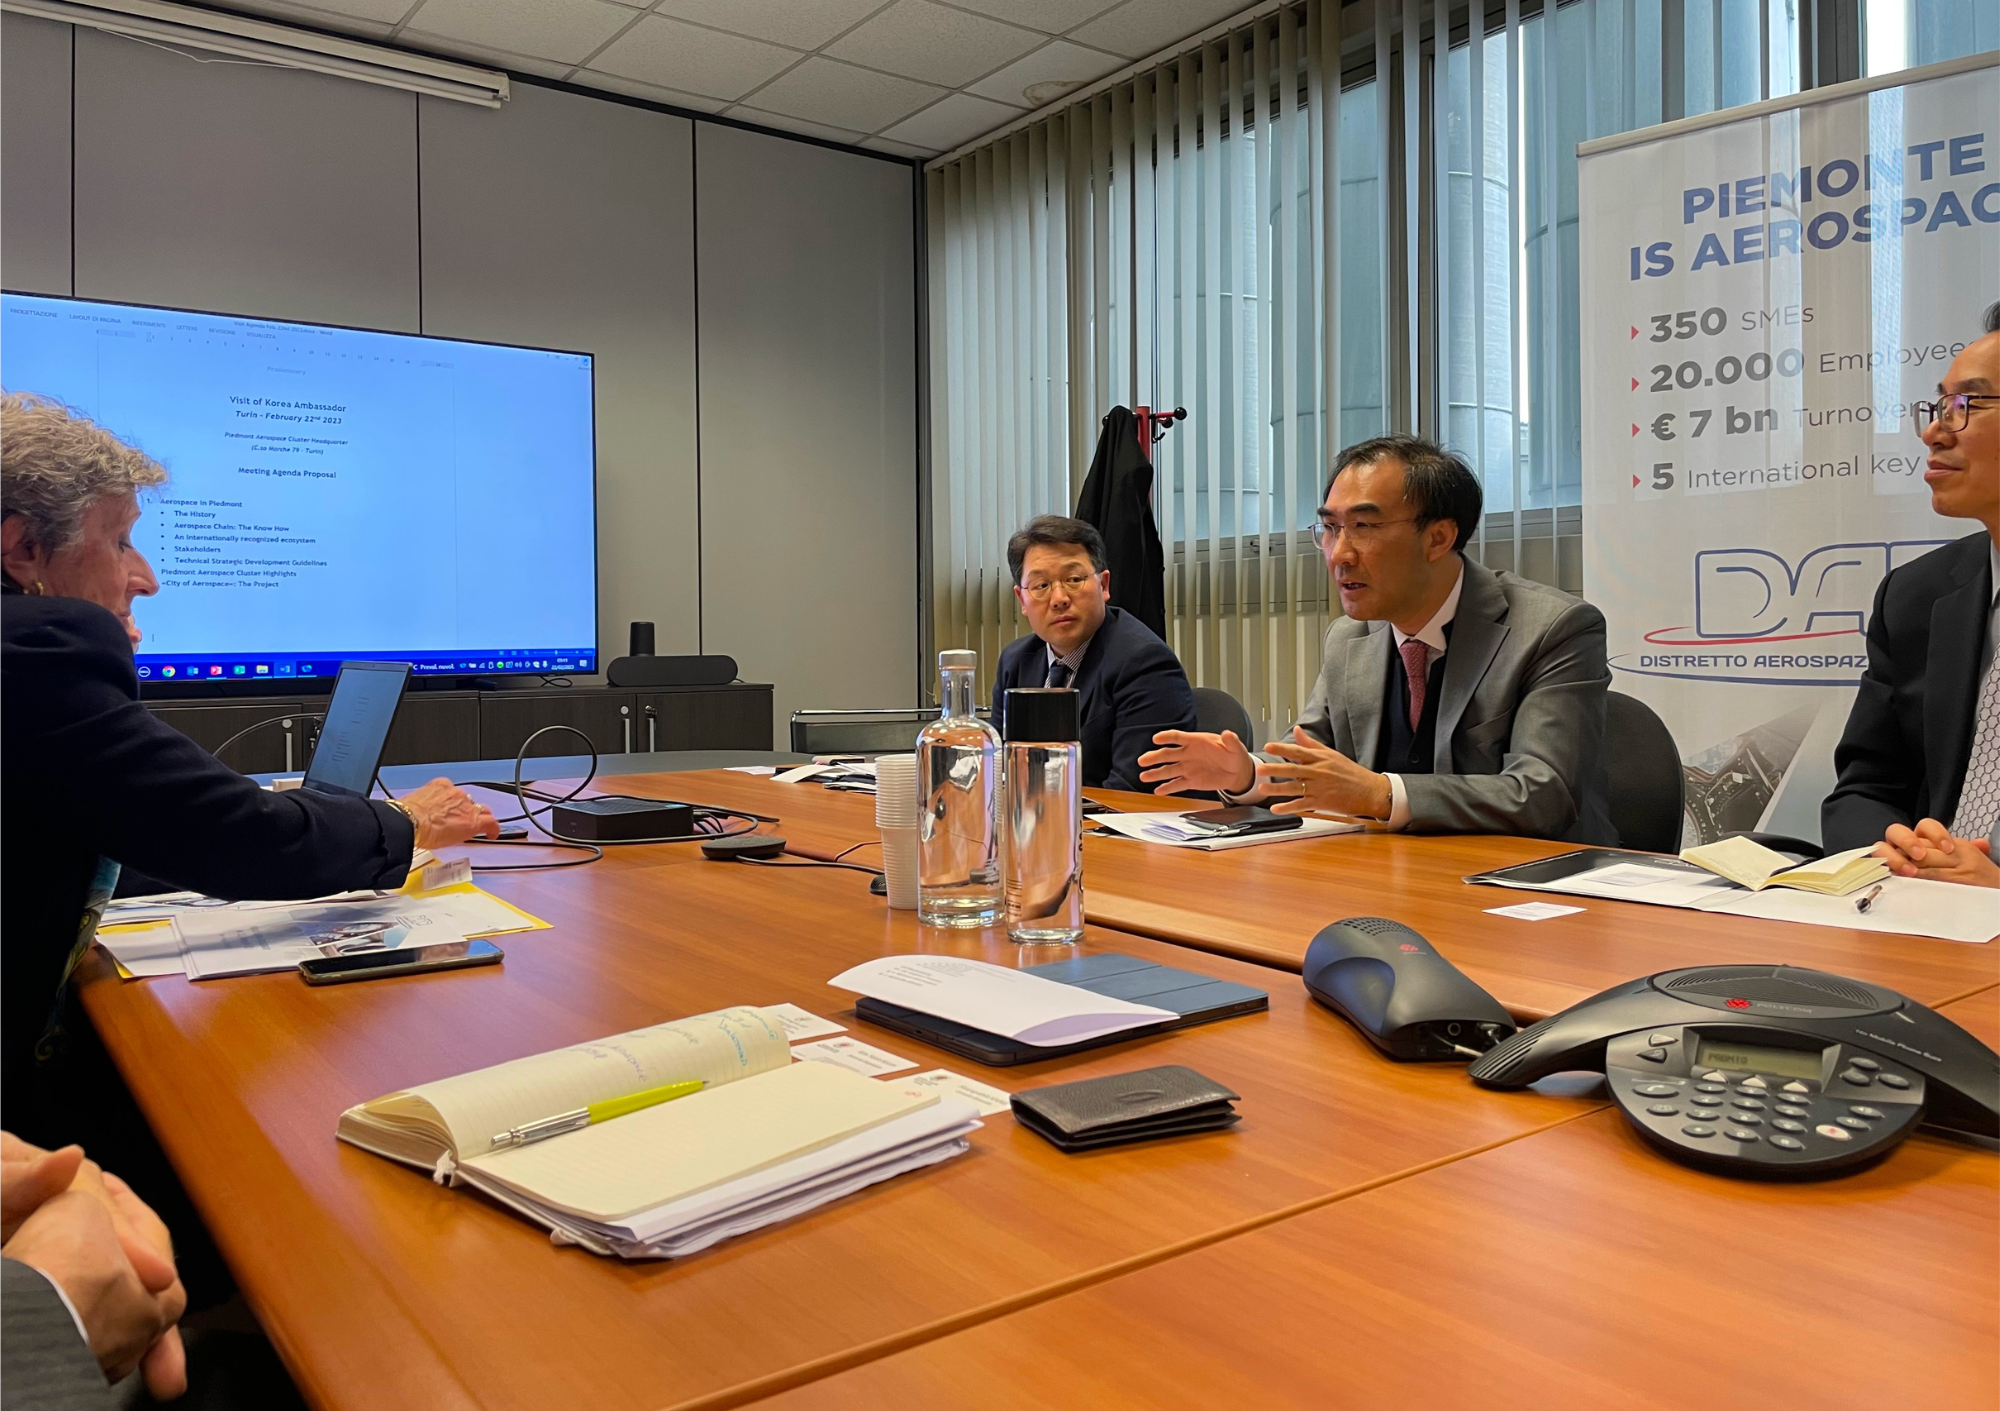 Visita dell’Ambasciatore della Repubblica di Corea Seong-ho Lee alla futura Città dell’Aerospazio. Incontro con il Presidente del Distretto Aerospaziale Piemonte, Fulvia Quagliotti.